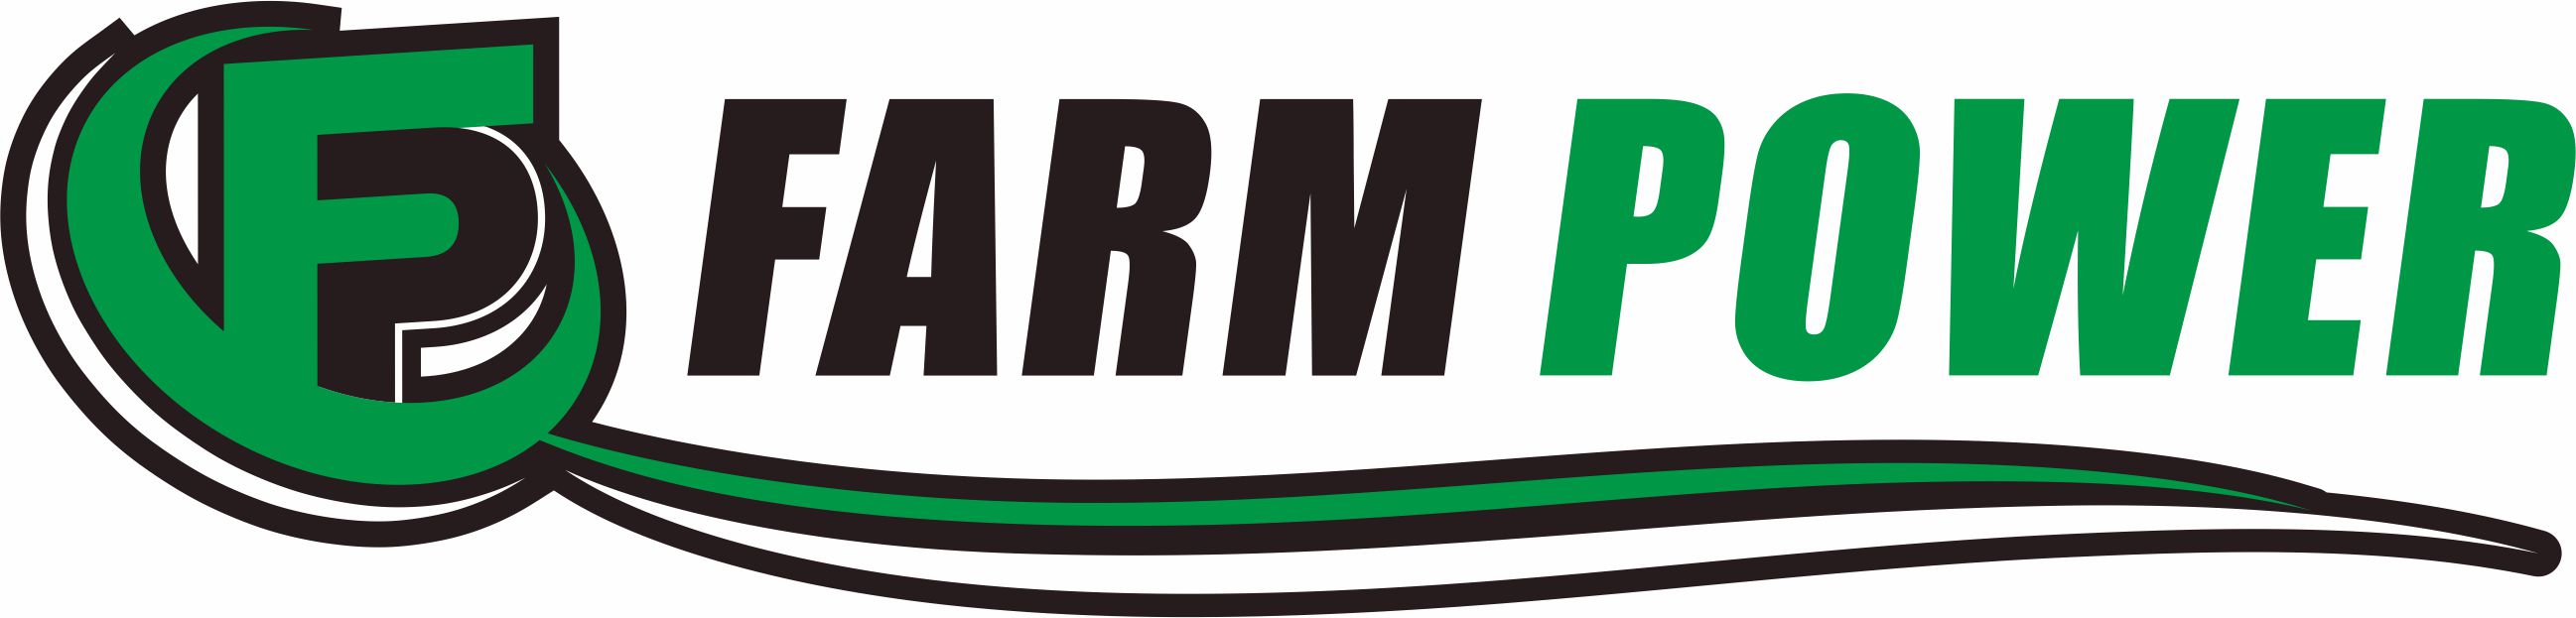 Farm Power Ltd.